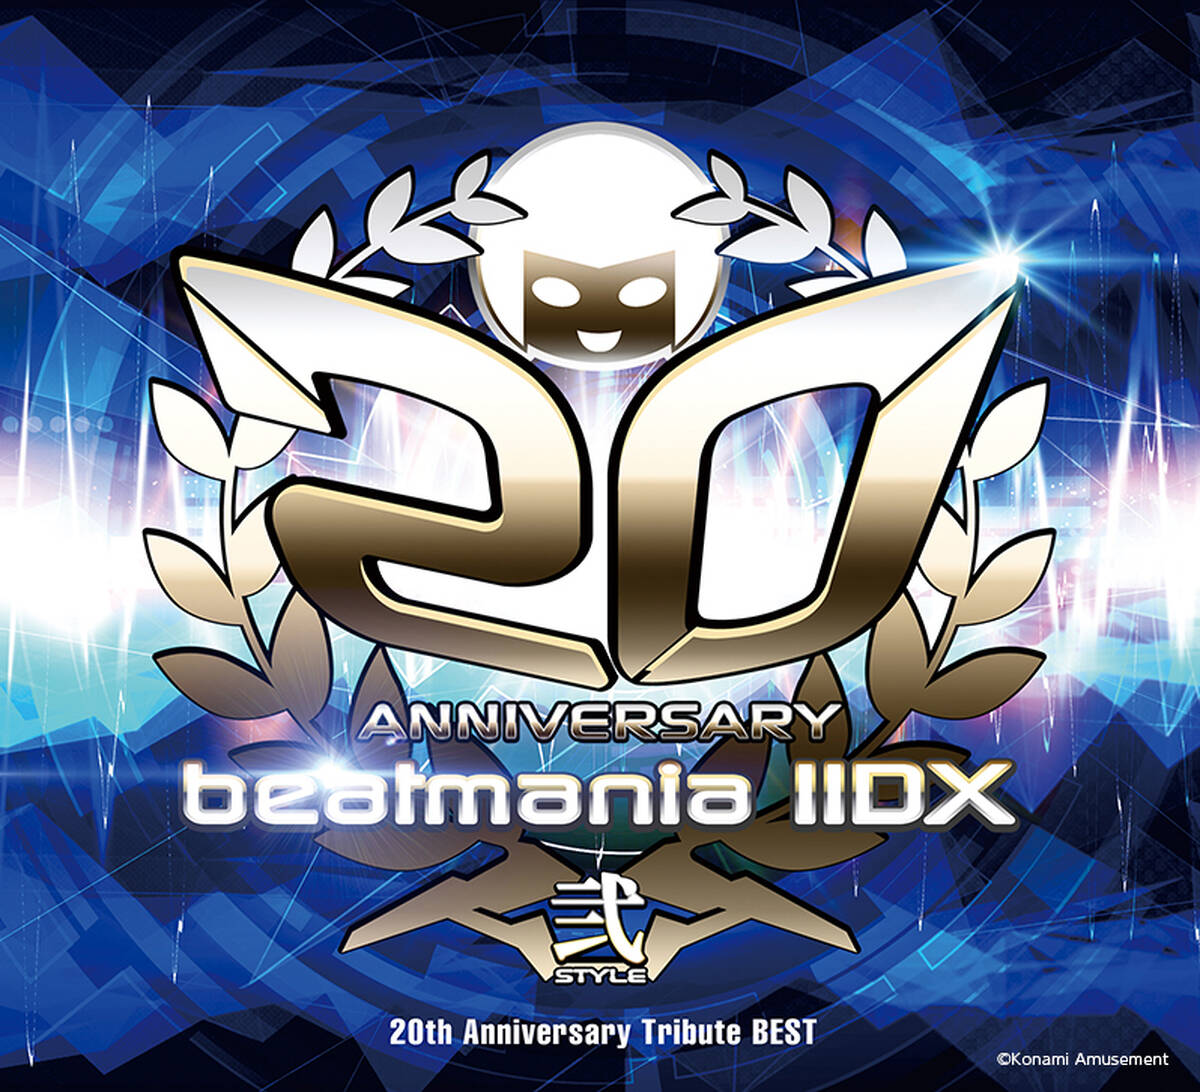 名作音ゲー Beatmania Iidx 全66曲を収録した20周年記念のベストアルバムを本日3月4日に発売 視聴動画も公開 アキバ総研